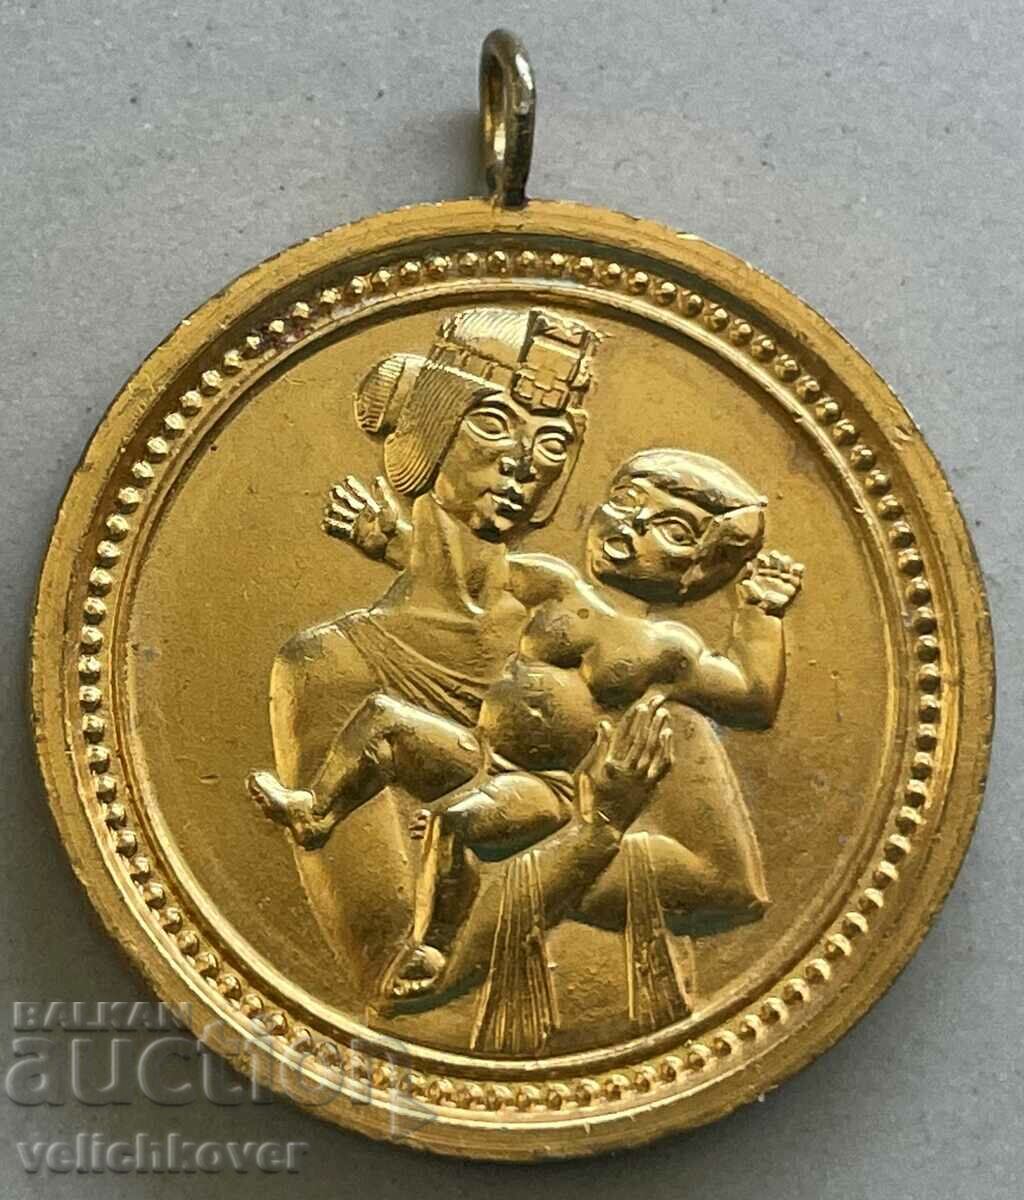 32885 Medalia Bulgaria pentru nașterea unui copil, orașul Sofia, anii 1970